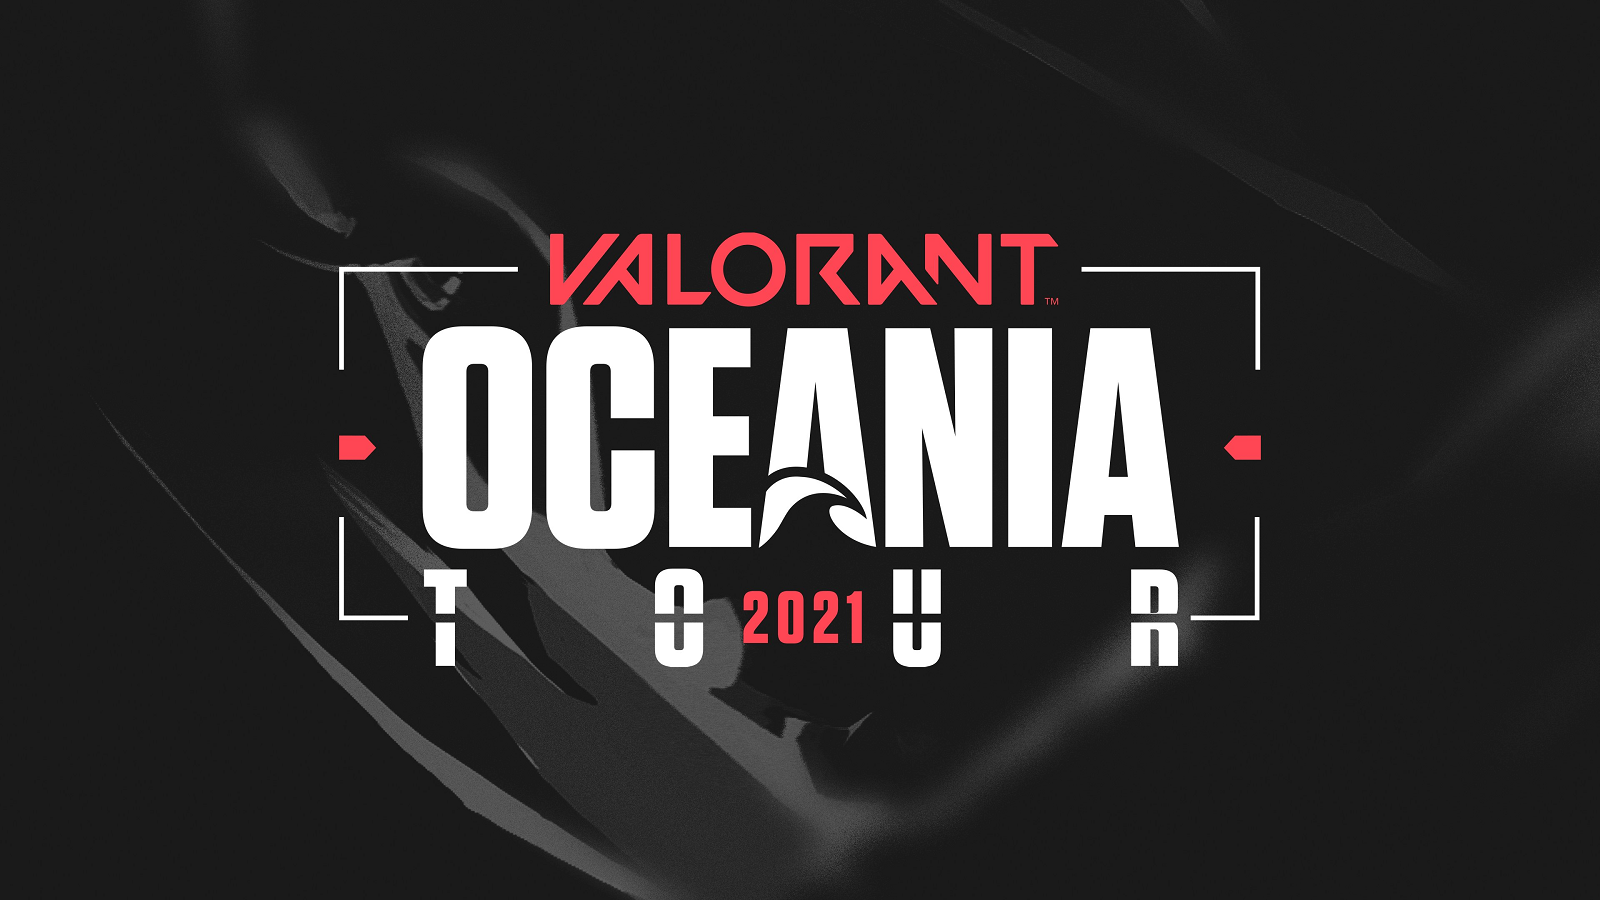 Valorant Oceania Tour 2021 